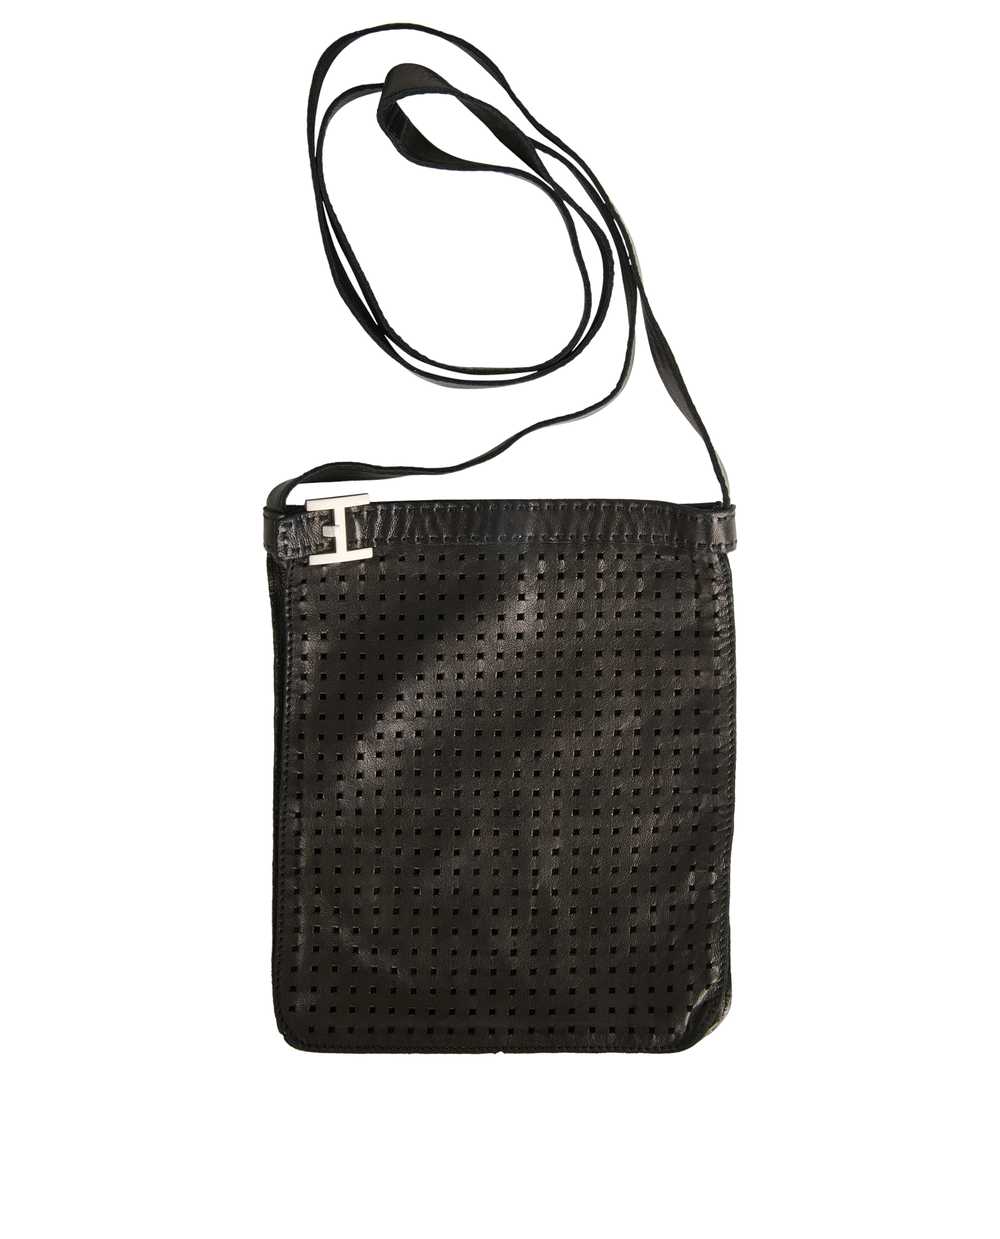 Hermès Todo Perforated Messenger Bag - image 3